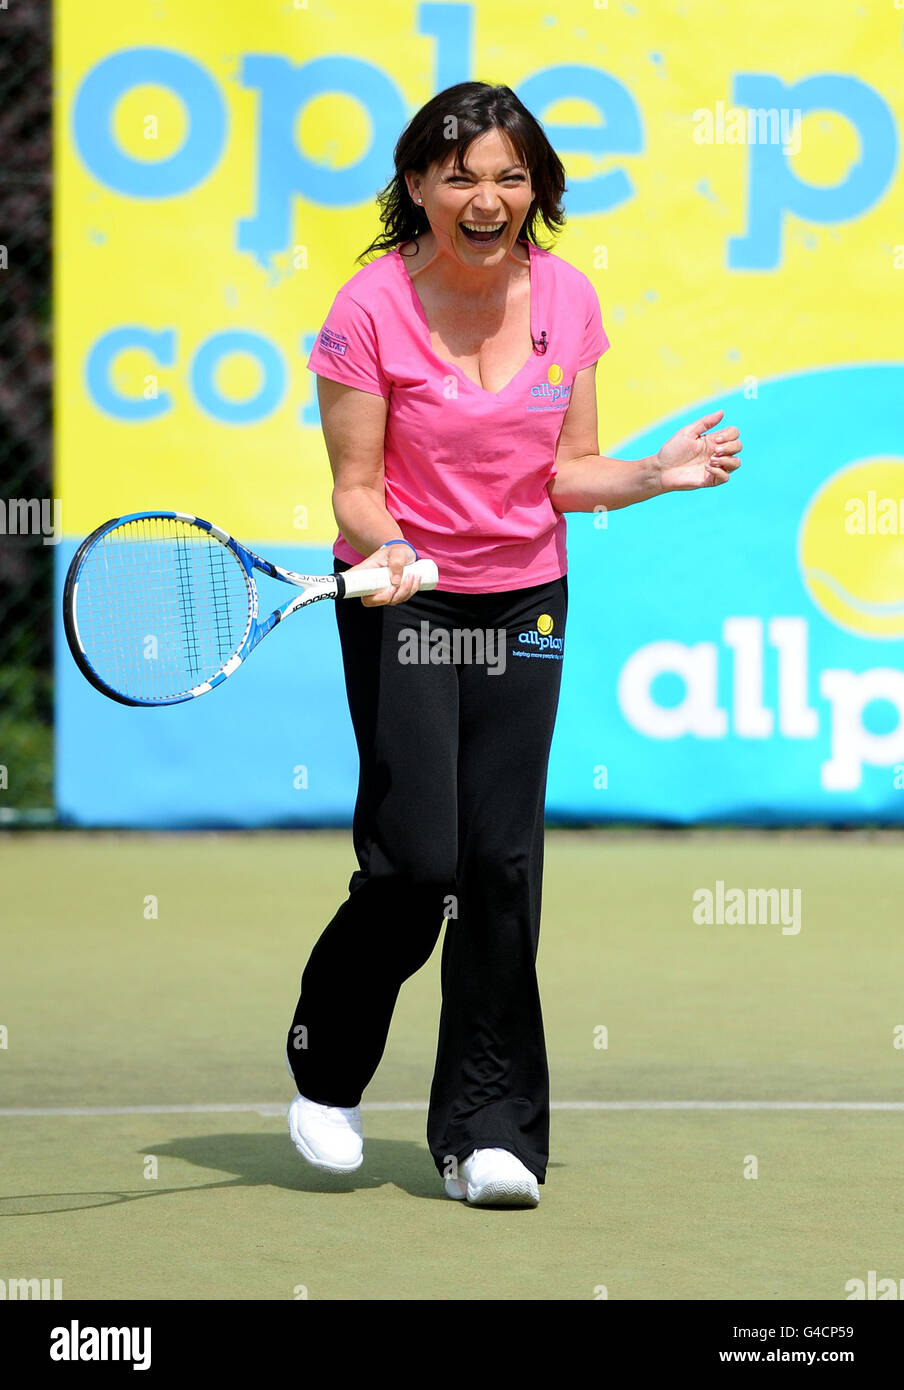 Lorraine Kelly juega al tenis durante la Campagne All Play de la Asociación de  Tenis de césped, en las canchas de tenis de Wimbledon Park, Wimbledon  Fotografía de stock - Alamy